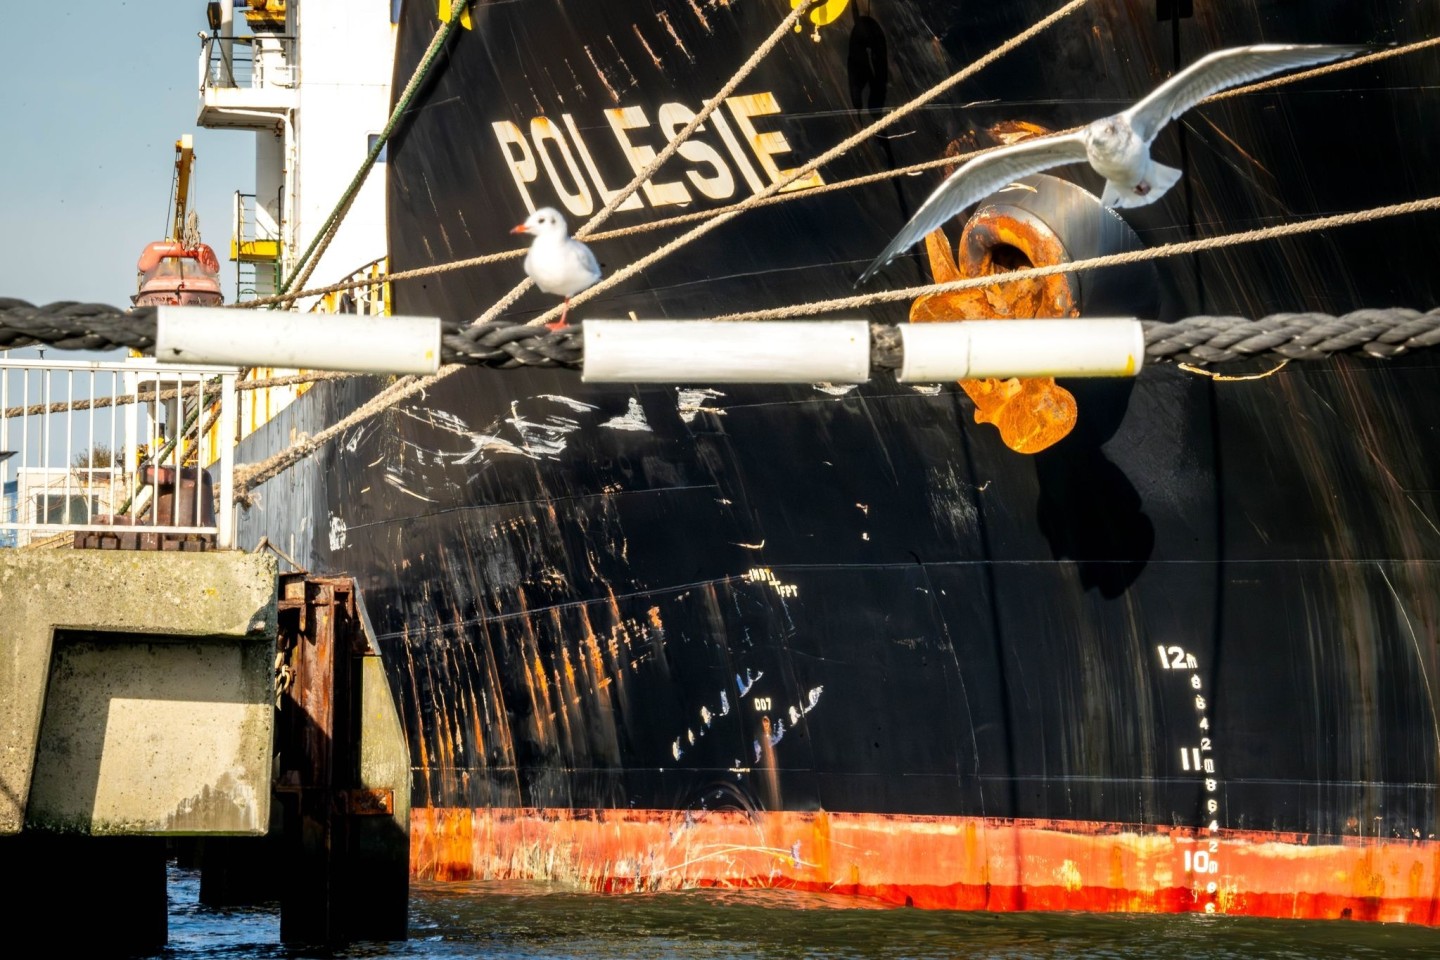 Infolge des Zusammenstoßes mit der „Polesie“ ist der Frachter «Verity“ in der in der Nordsee gesunken.